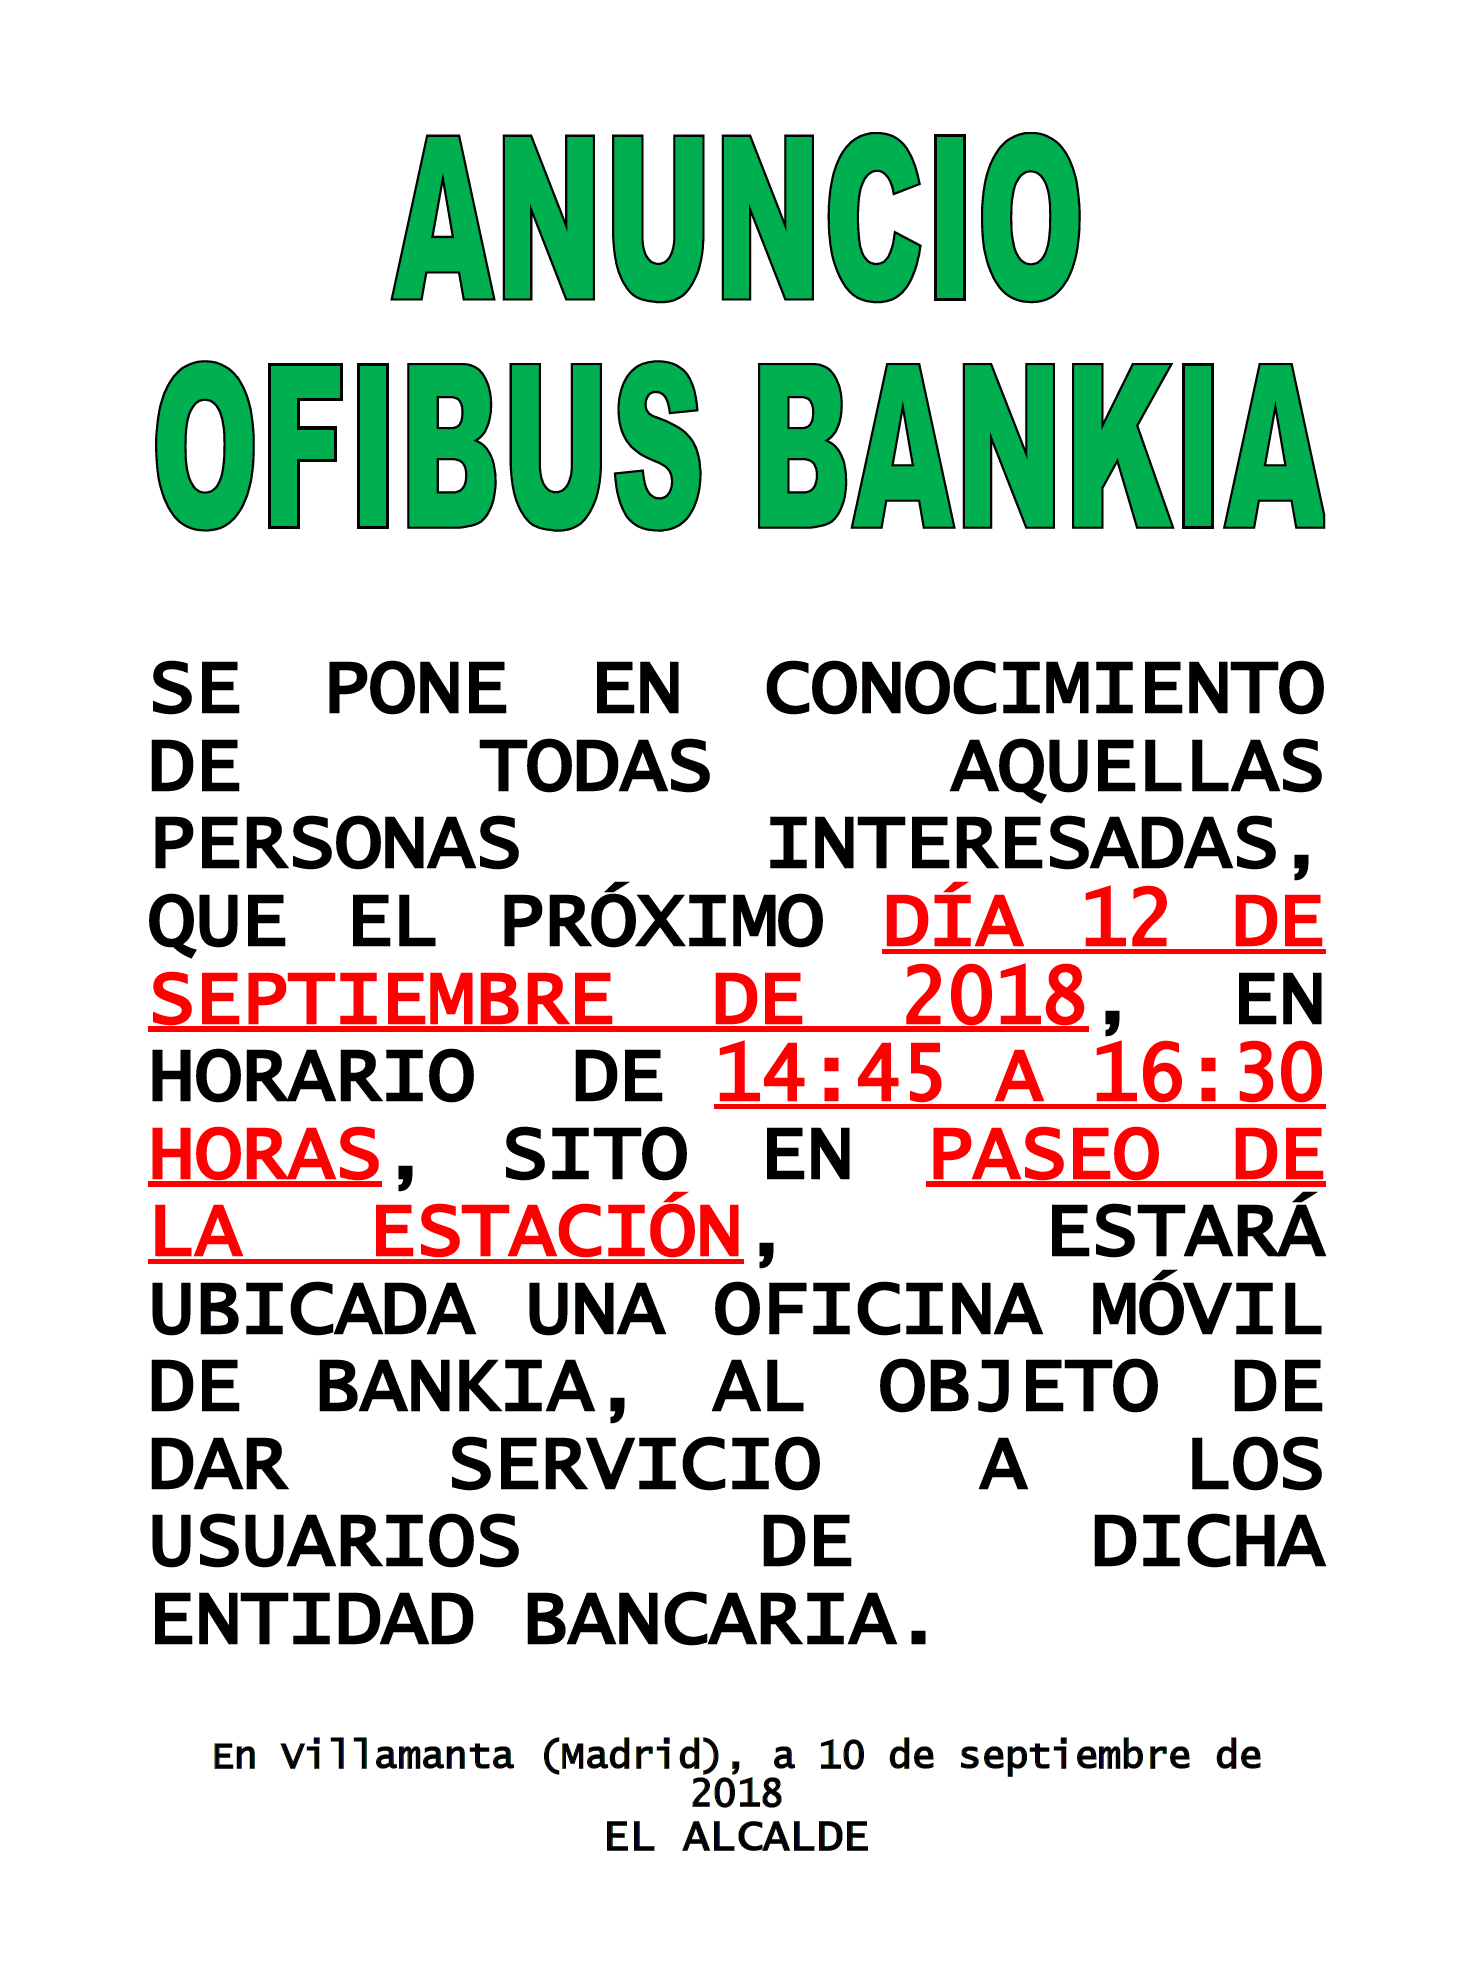 Ofibus bankia 12/09/2018